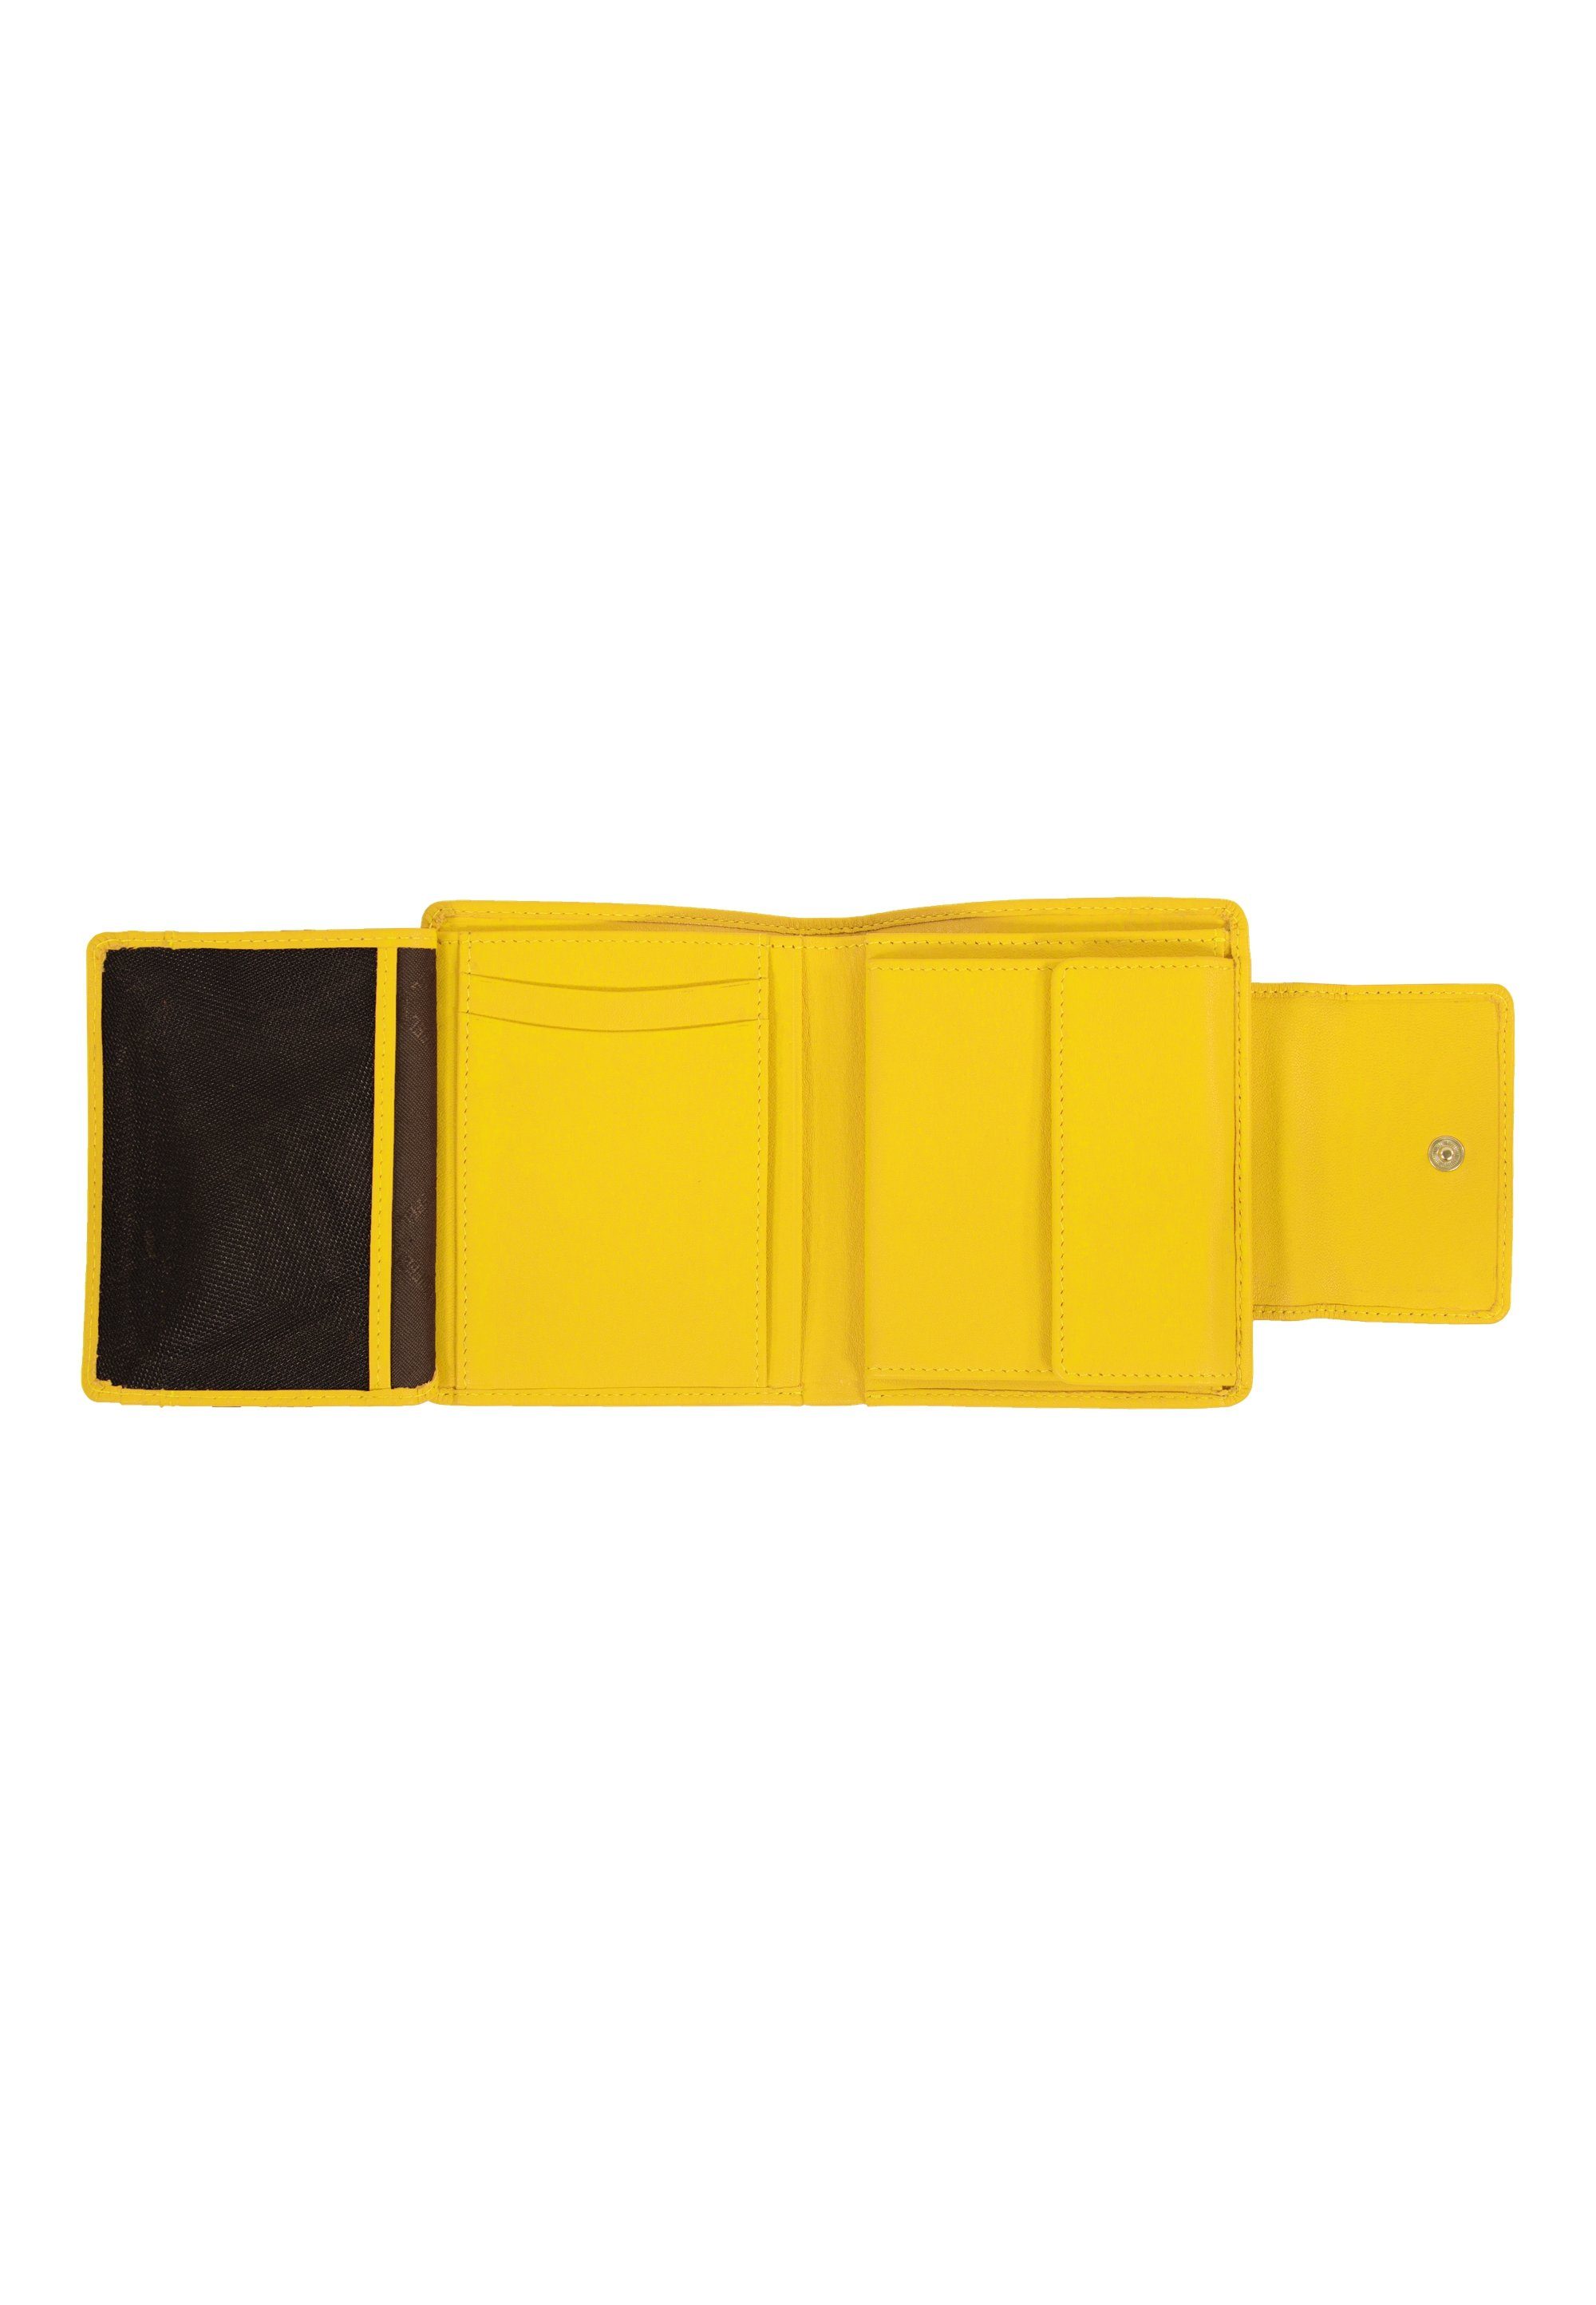 Braun Büffel 4 gelb Geldbörse CAPRI Kartenfächern S, mit